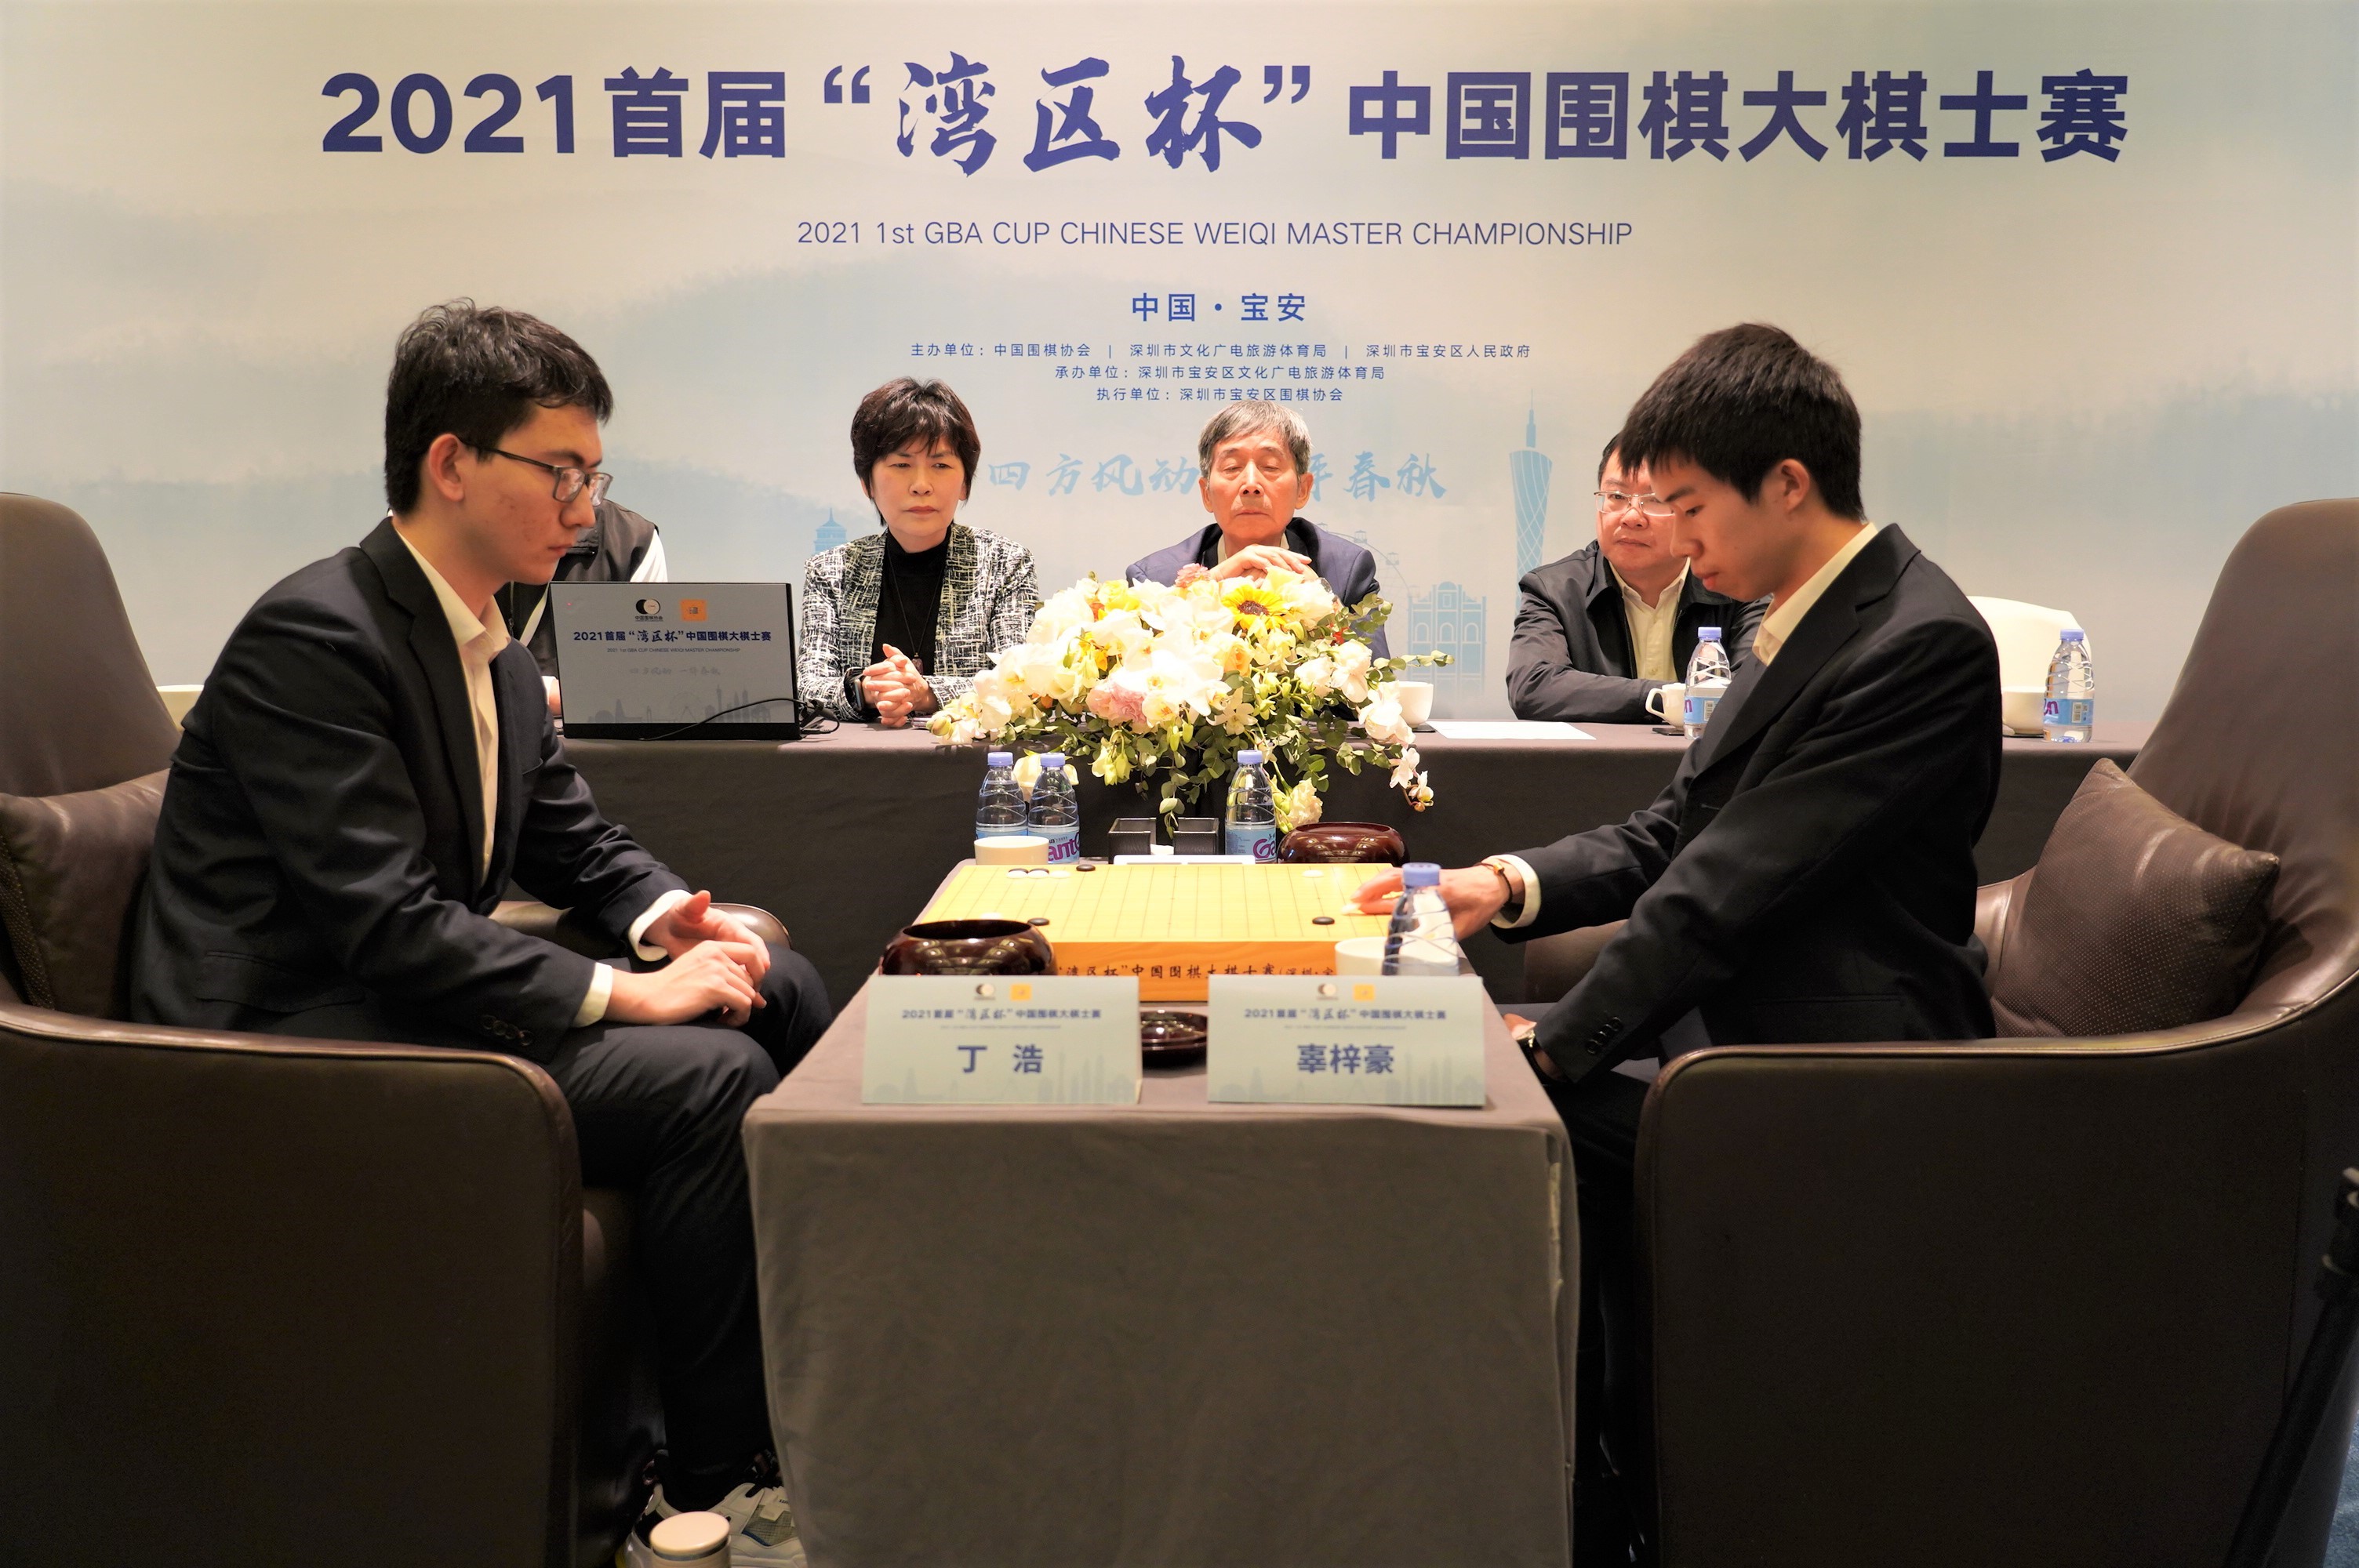 2021首届“湾区杯”中国围棋大棋士赛决赛在深圳举行